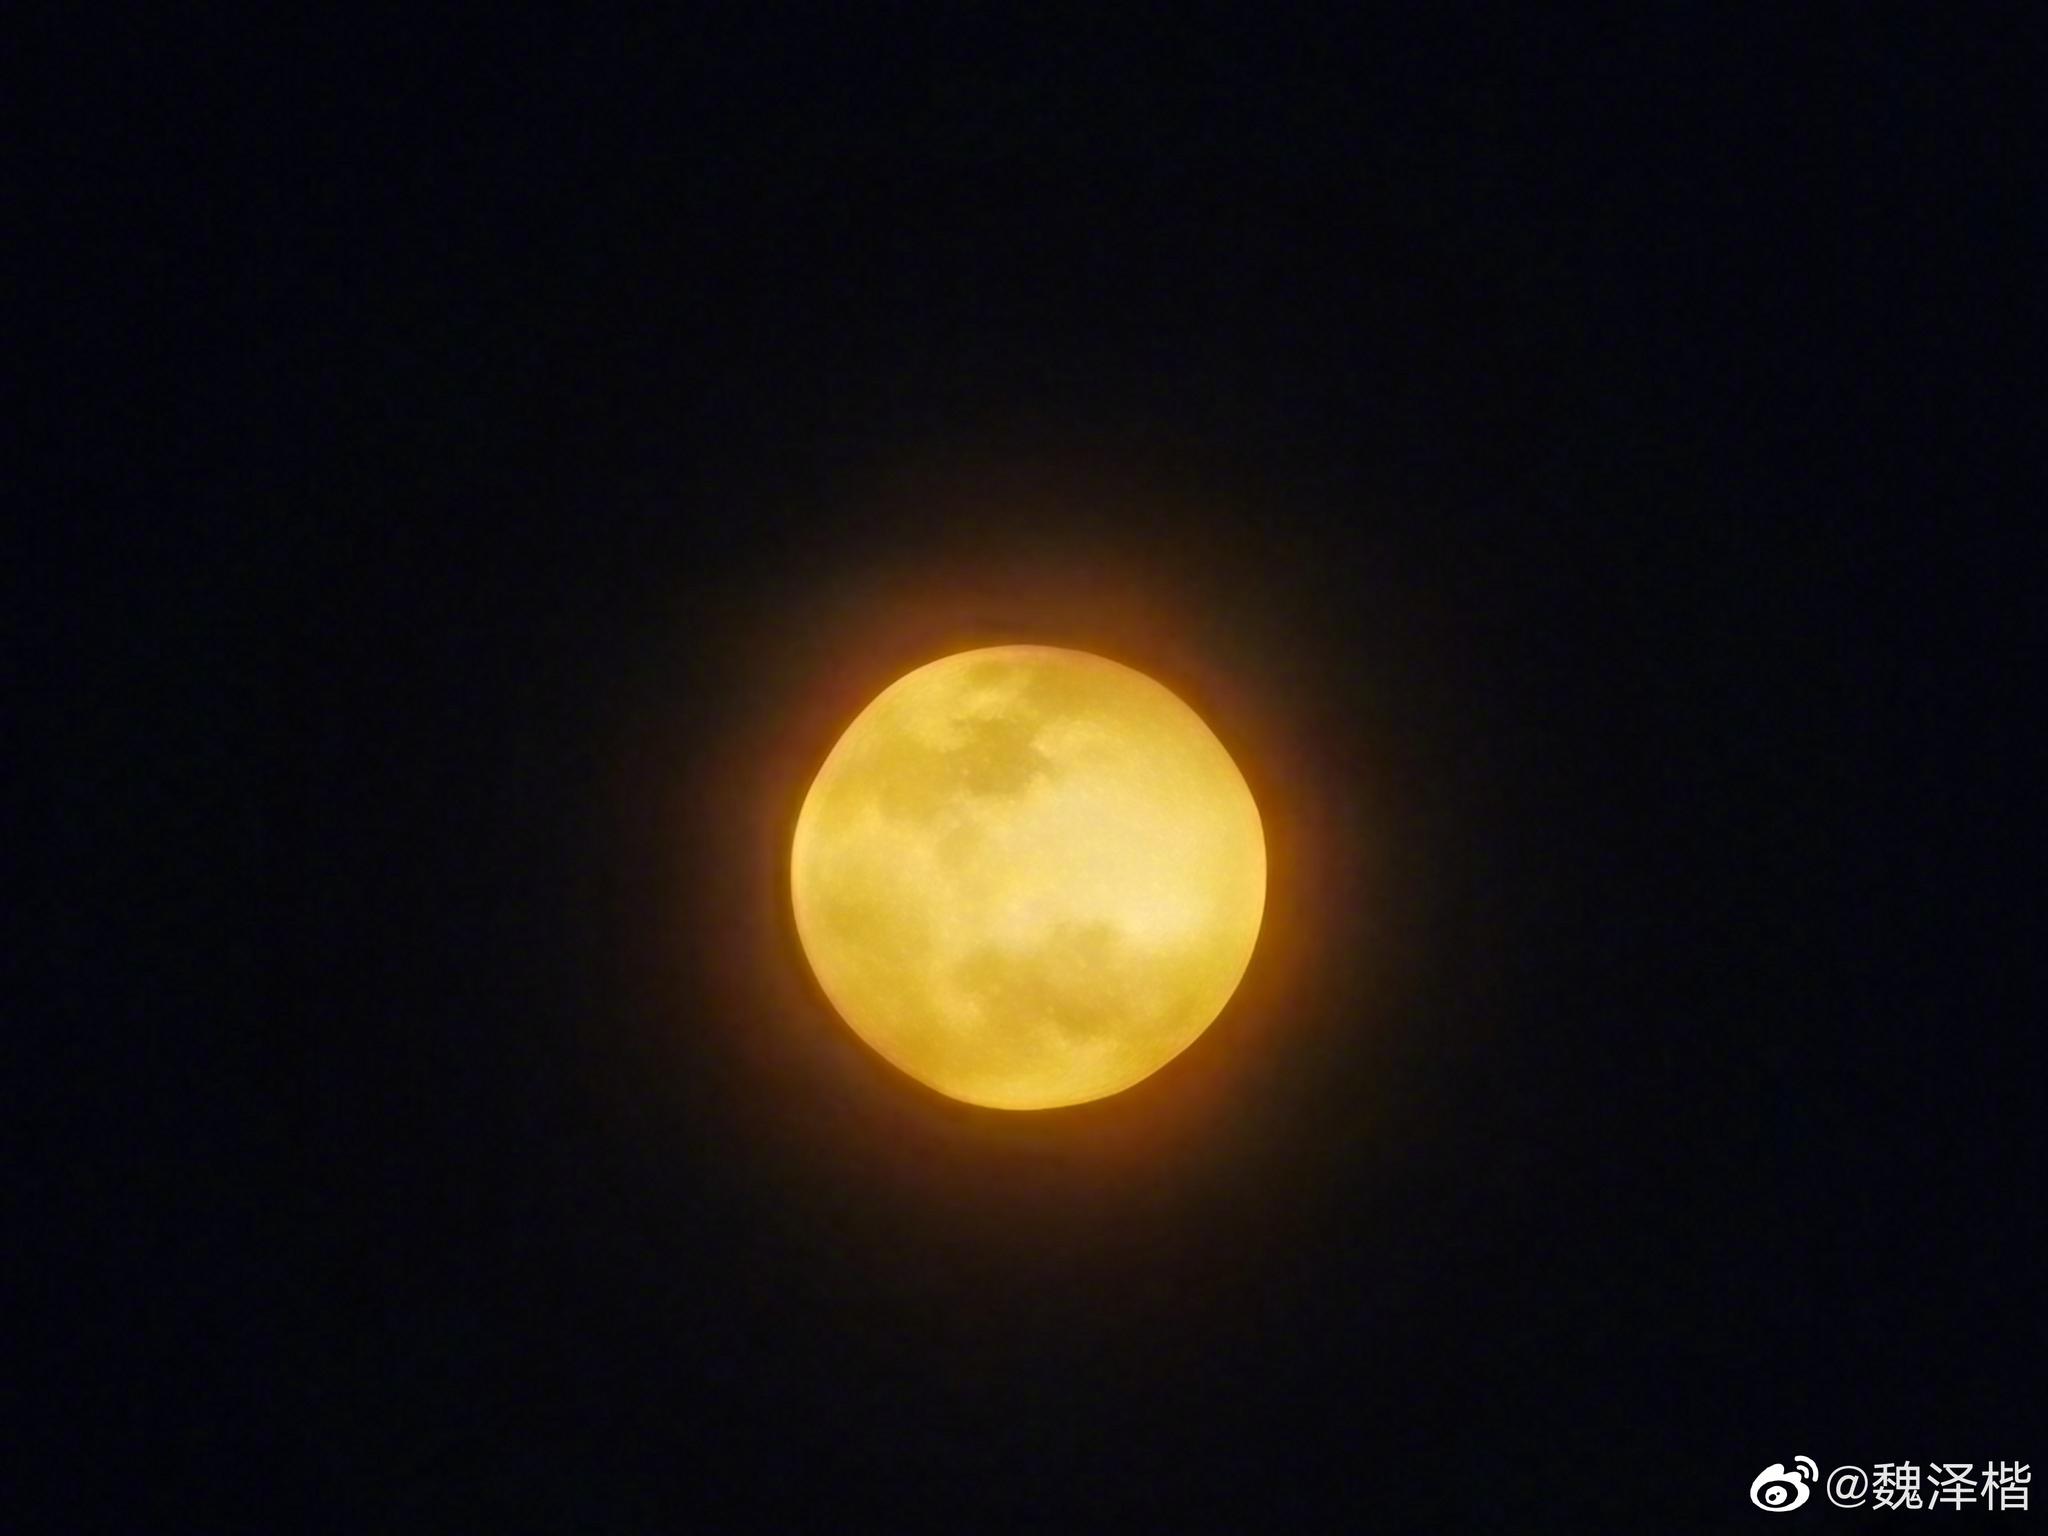 我用天文望远镜拍了今晚的 金色月亮特写!分享给大家观看!